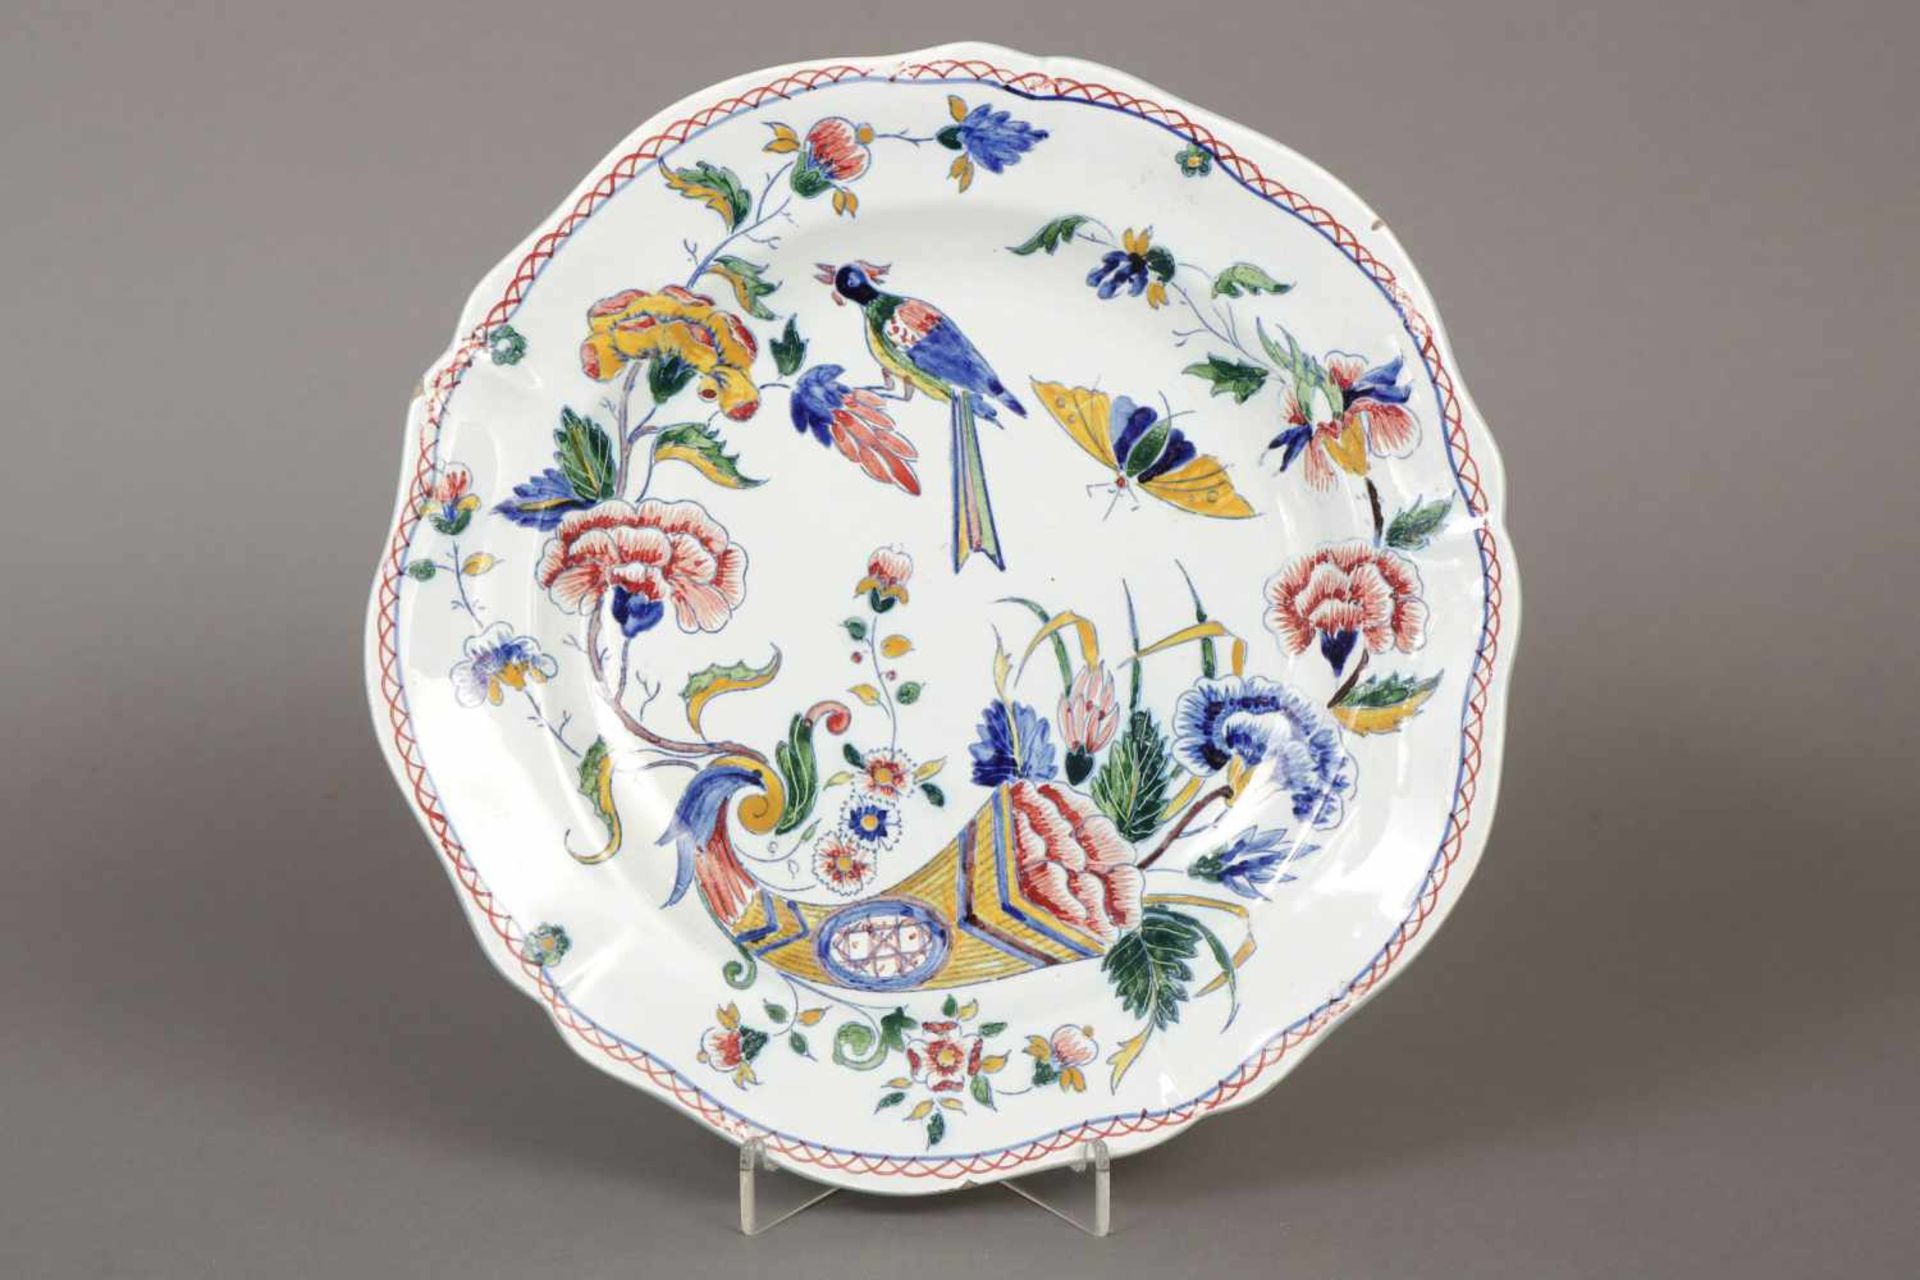 Fayence-Teller des 19. Jahrhundertspolychromes Dekor in Scharffeuermalerei ¨Insekten, Vögel,